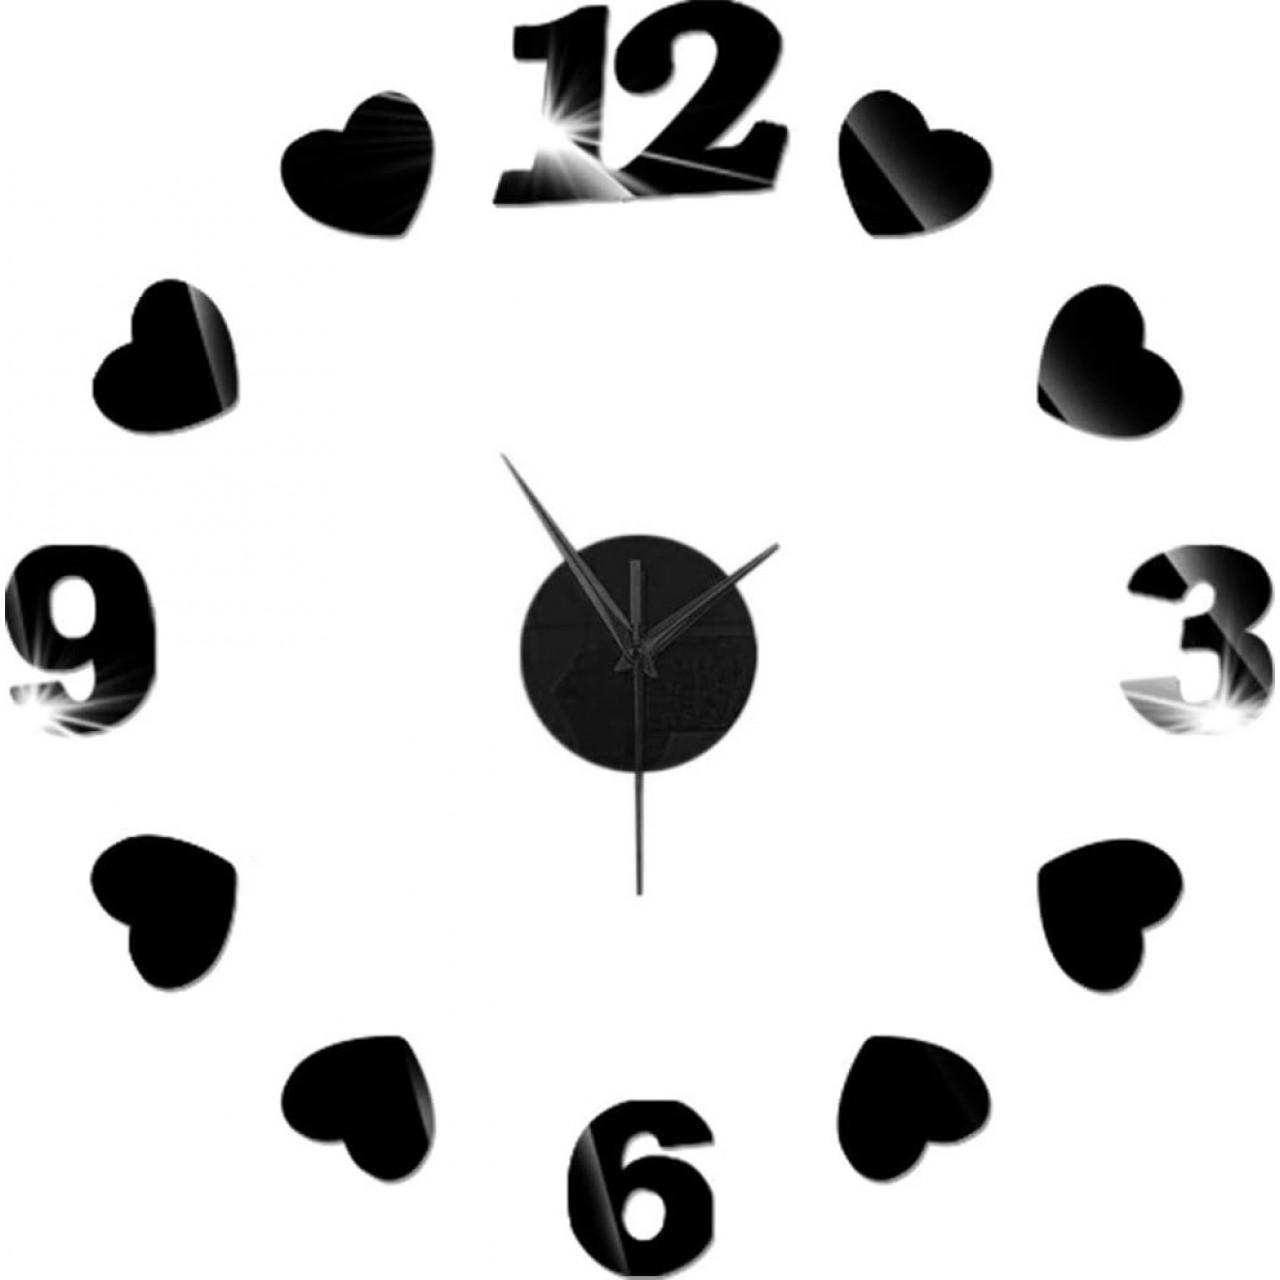 Αυτοκόλλητο Ρολόι Τοίχου Ακρυλικό με καρδούλες και νούμερα - Μικρό - 5653 - Μαύρο